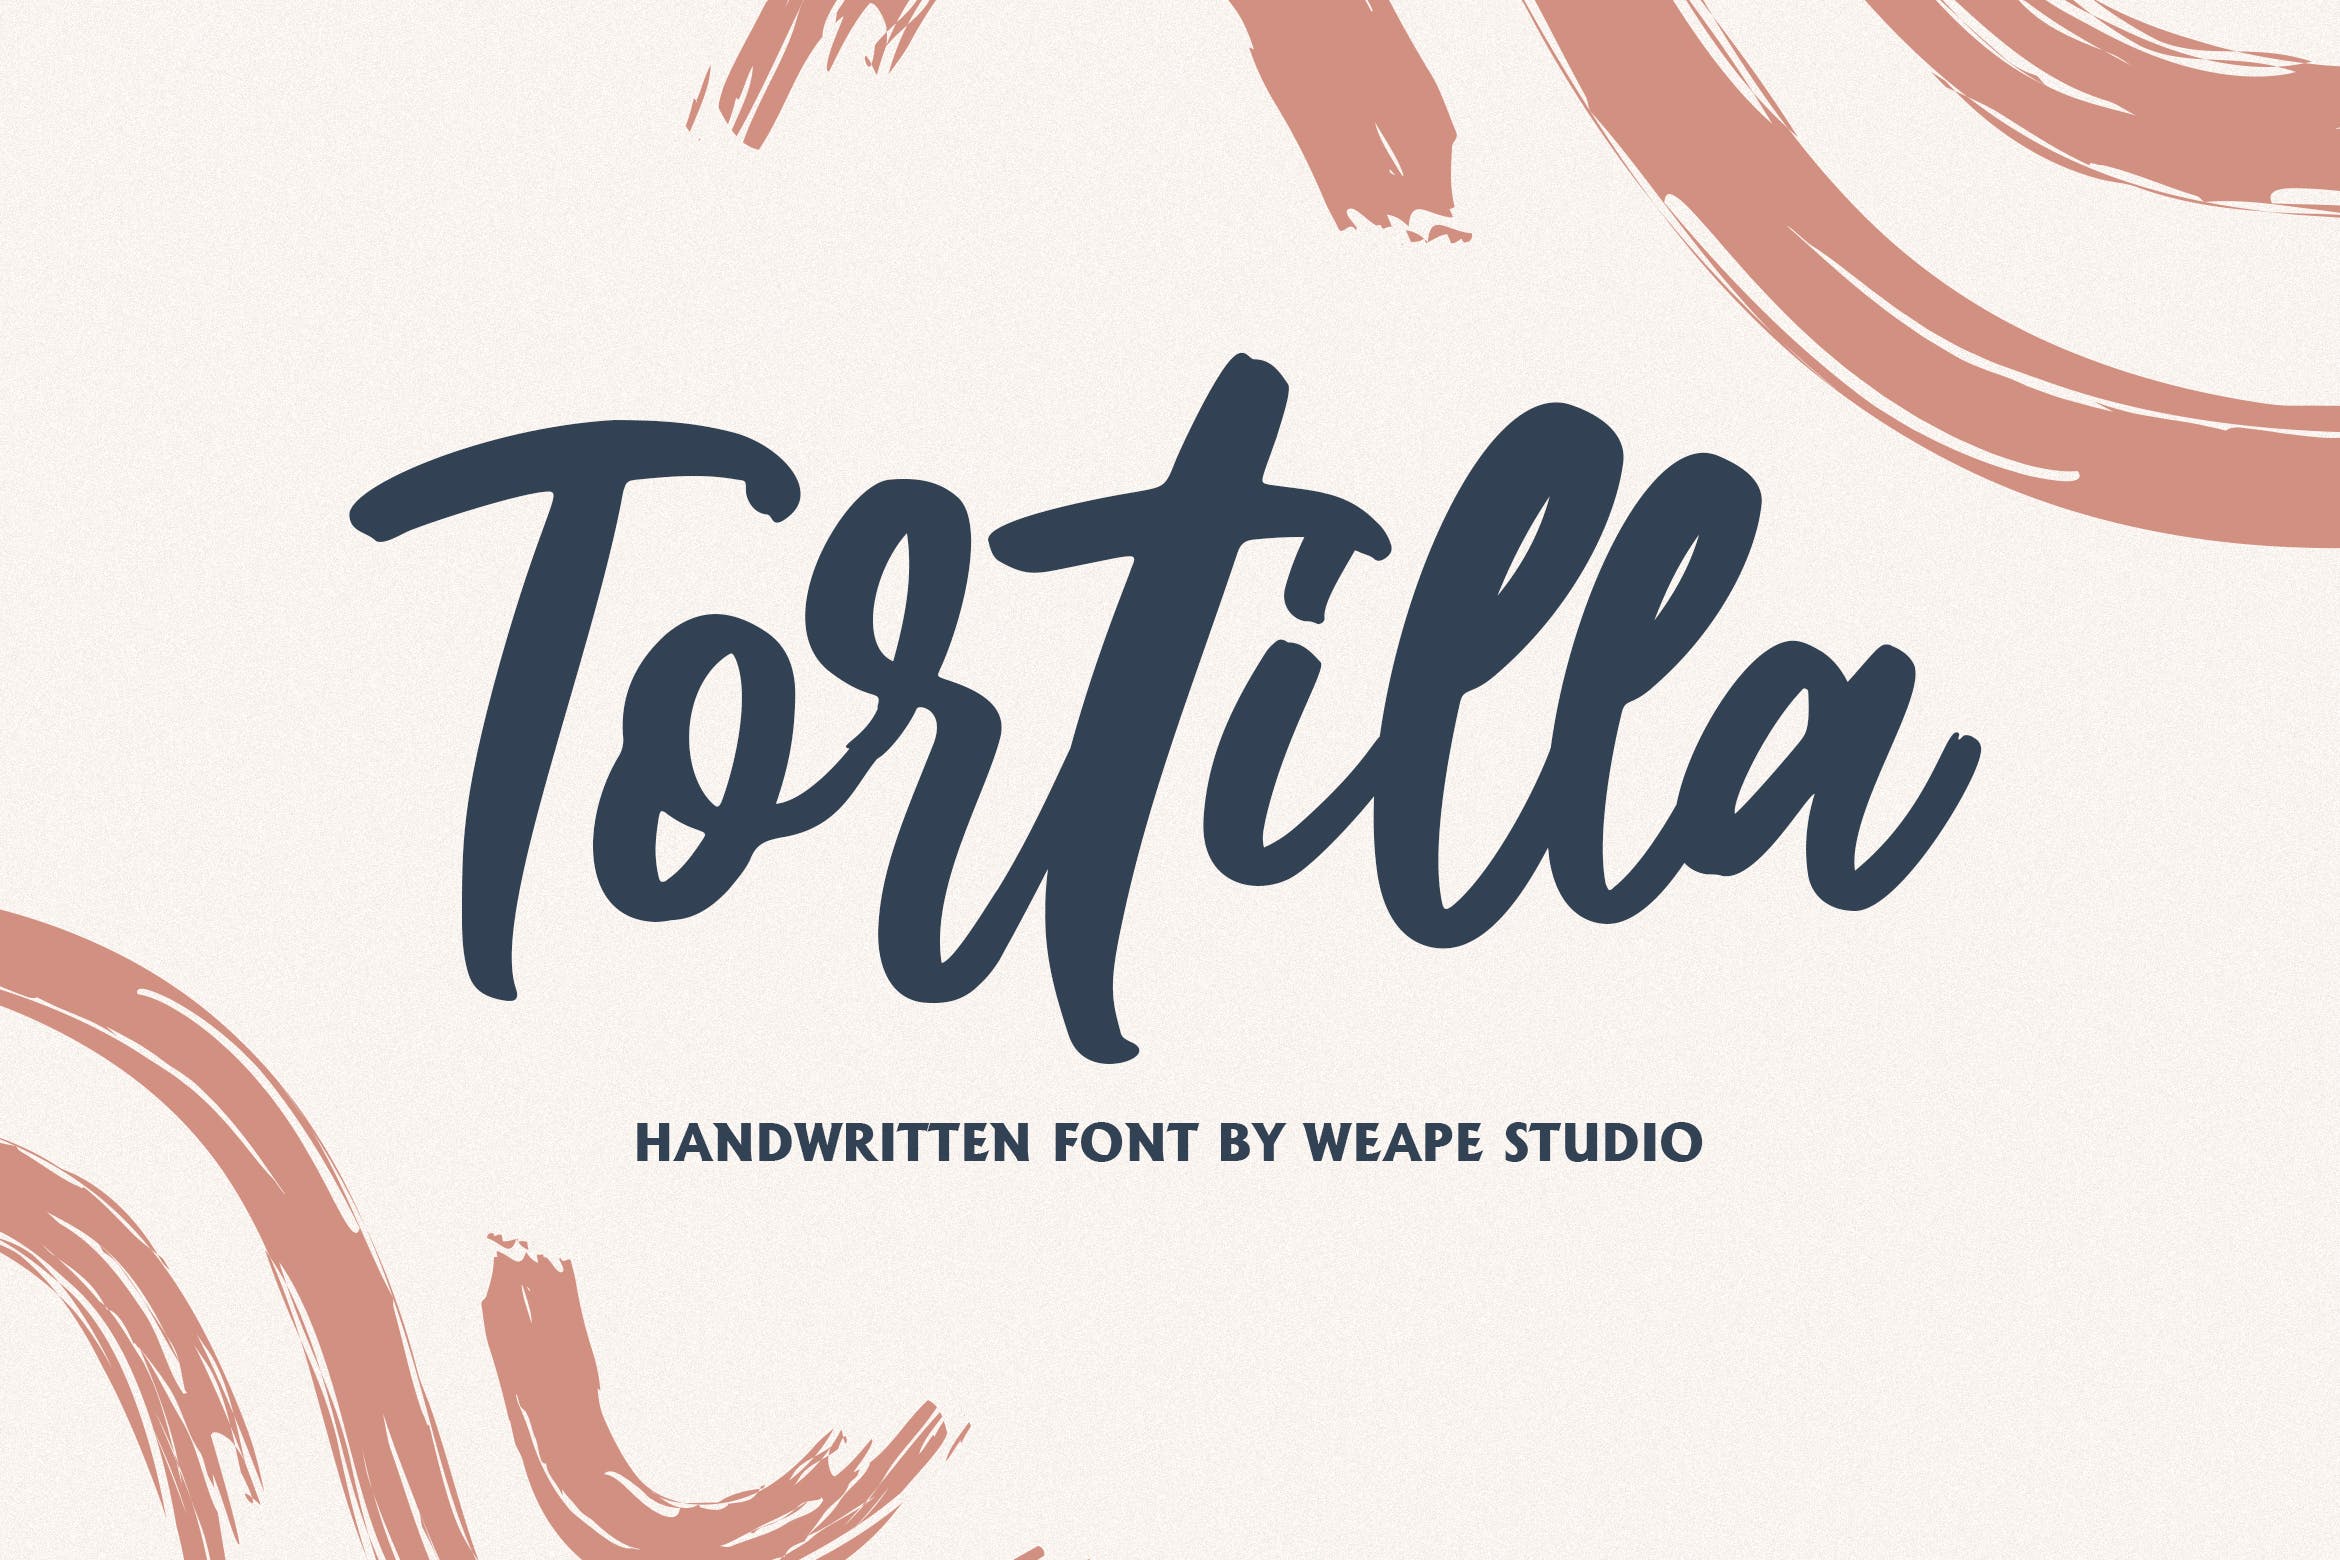 流畅笔画英文书法笔刷字体下载 Tortilla – Hand